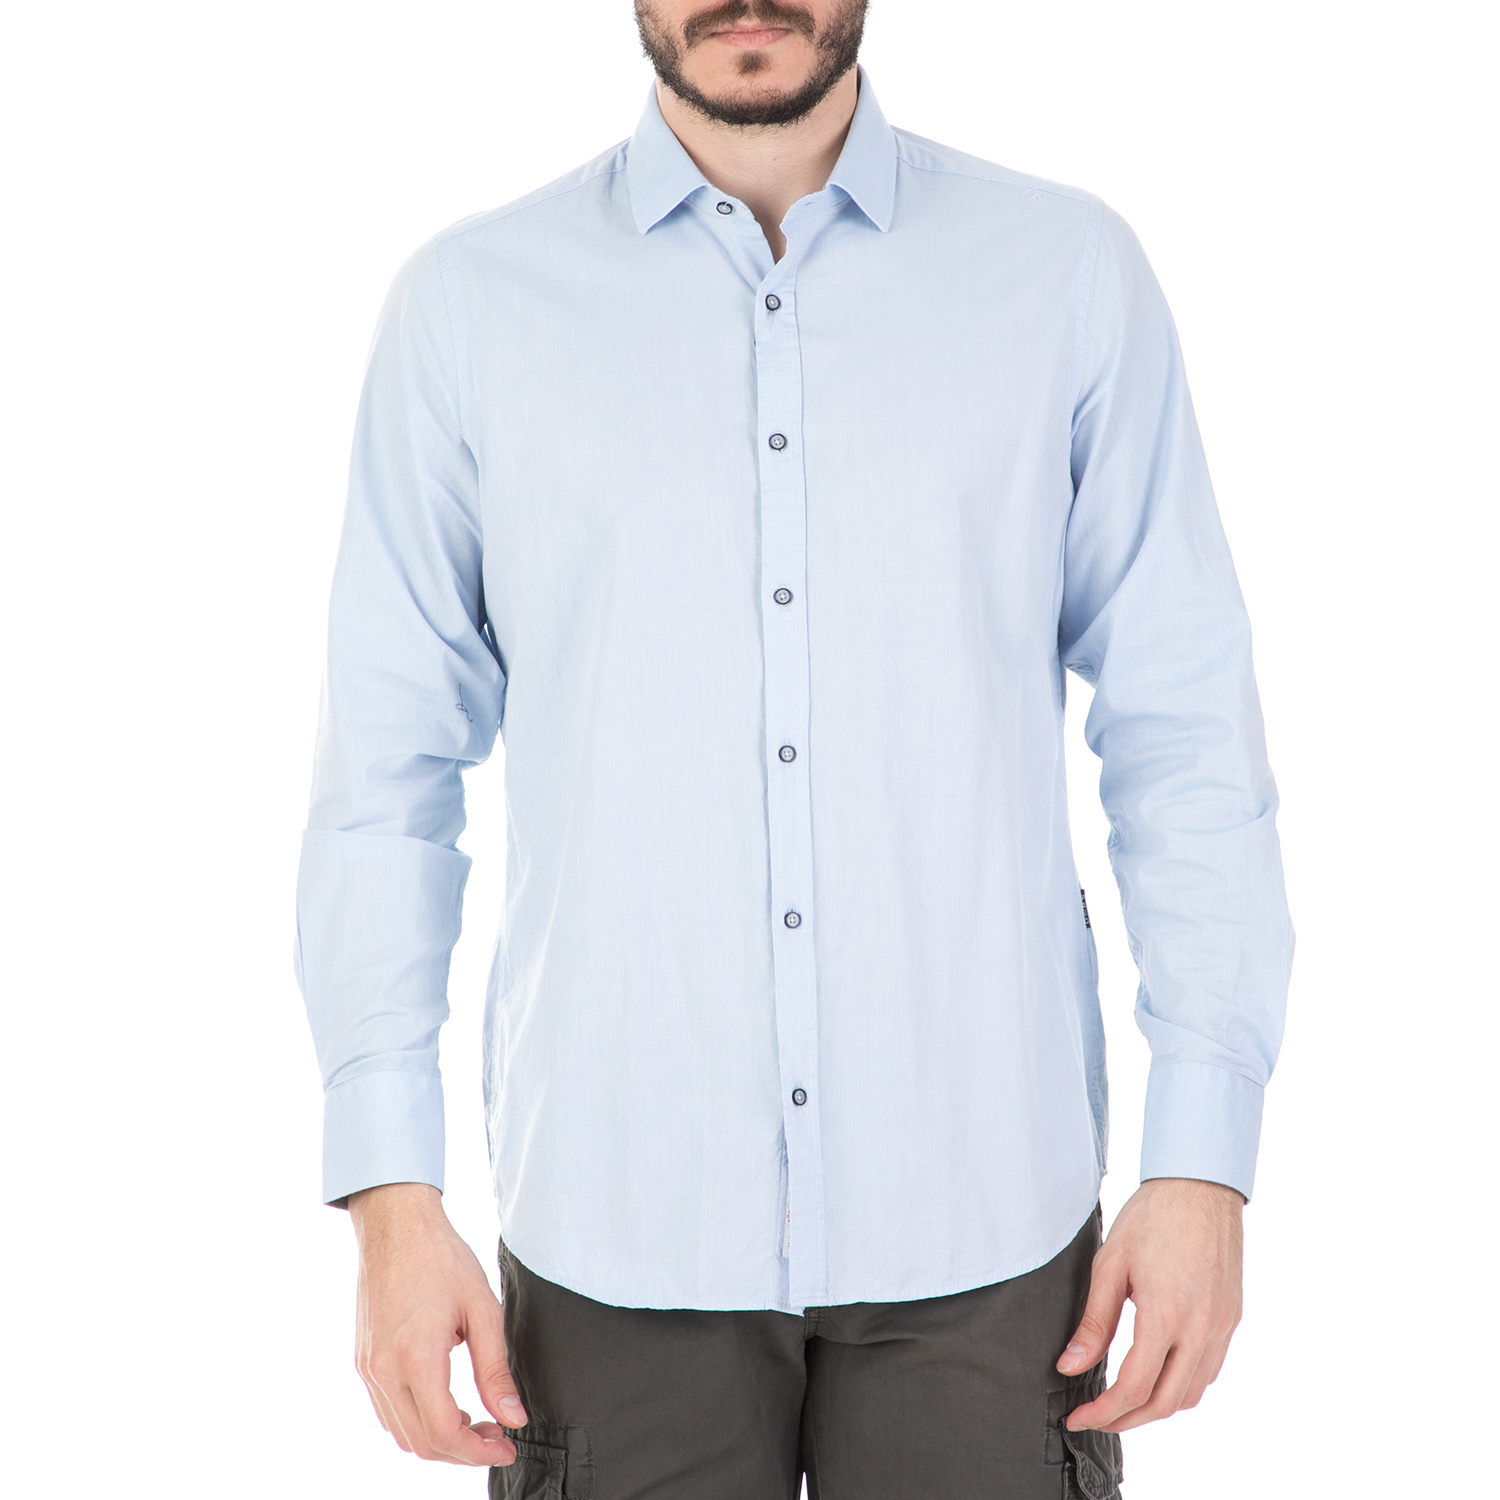 Ανδρικά/Ρούχα/Πουκάμισα/Μακρυμάνικα DORS - Ανδρικό πουκάμισο DORS γαλάζιο